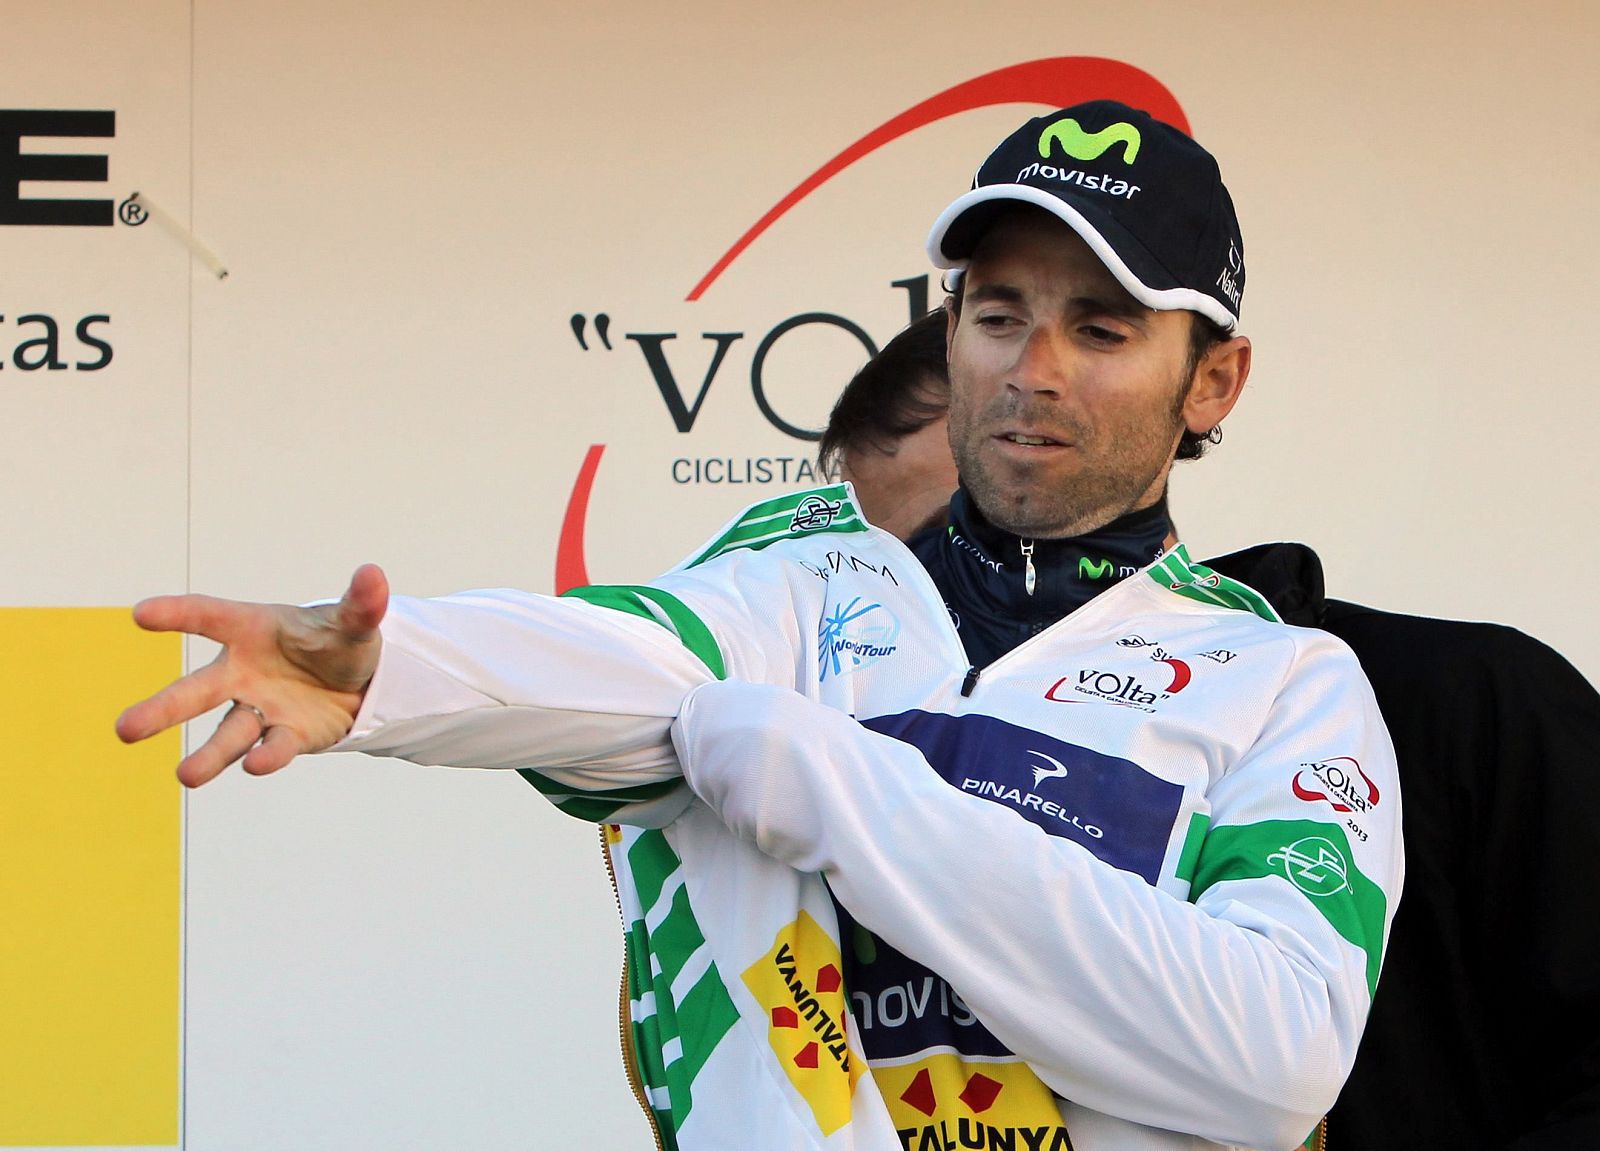 Alejandro Valverde del equipo Movistar se coloca el maillot de líder de la Volta Ciclista a Catalunya